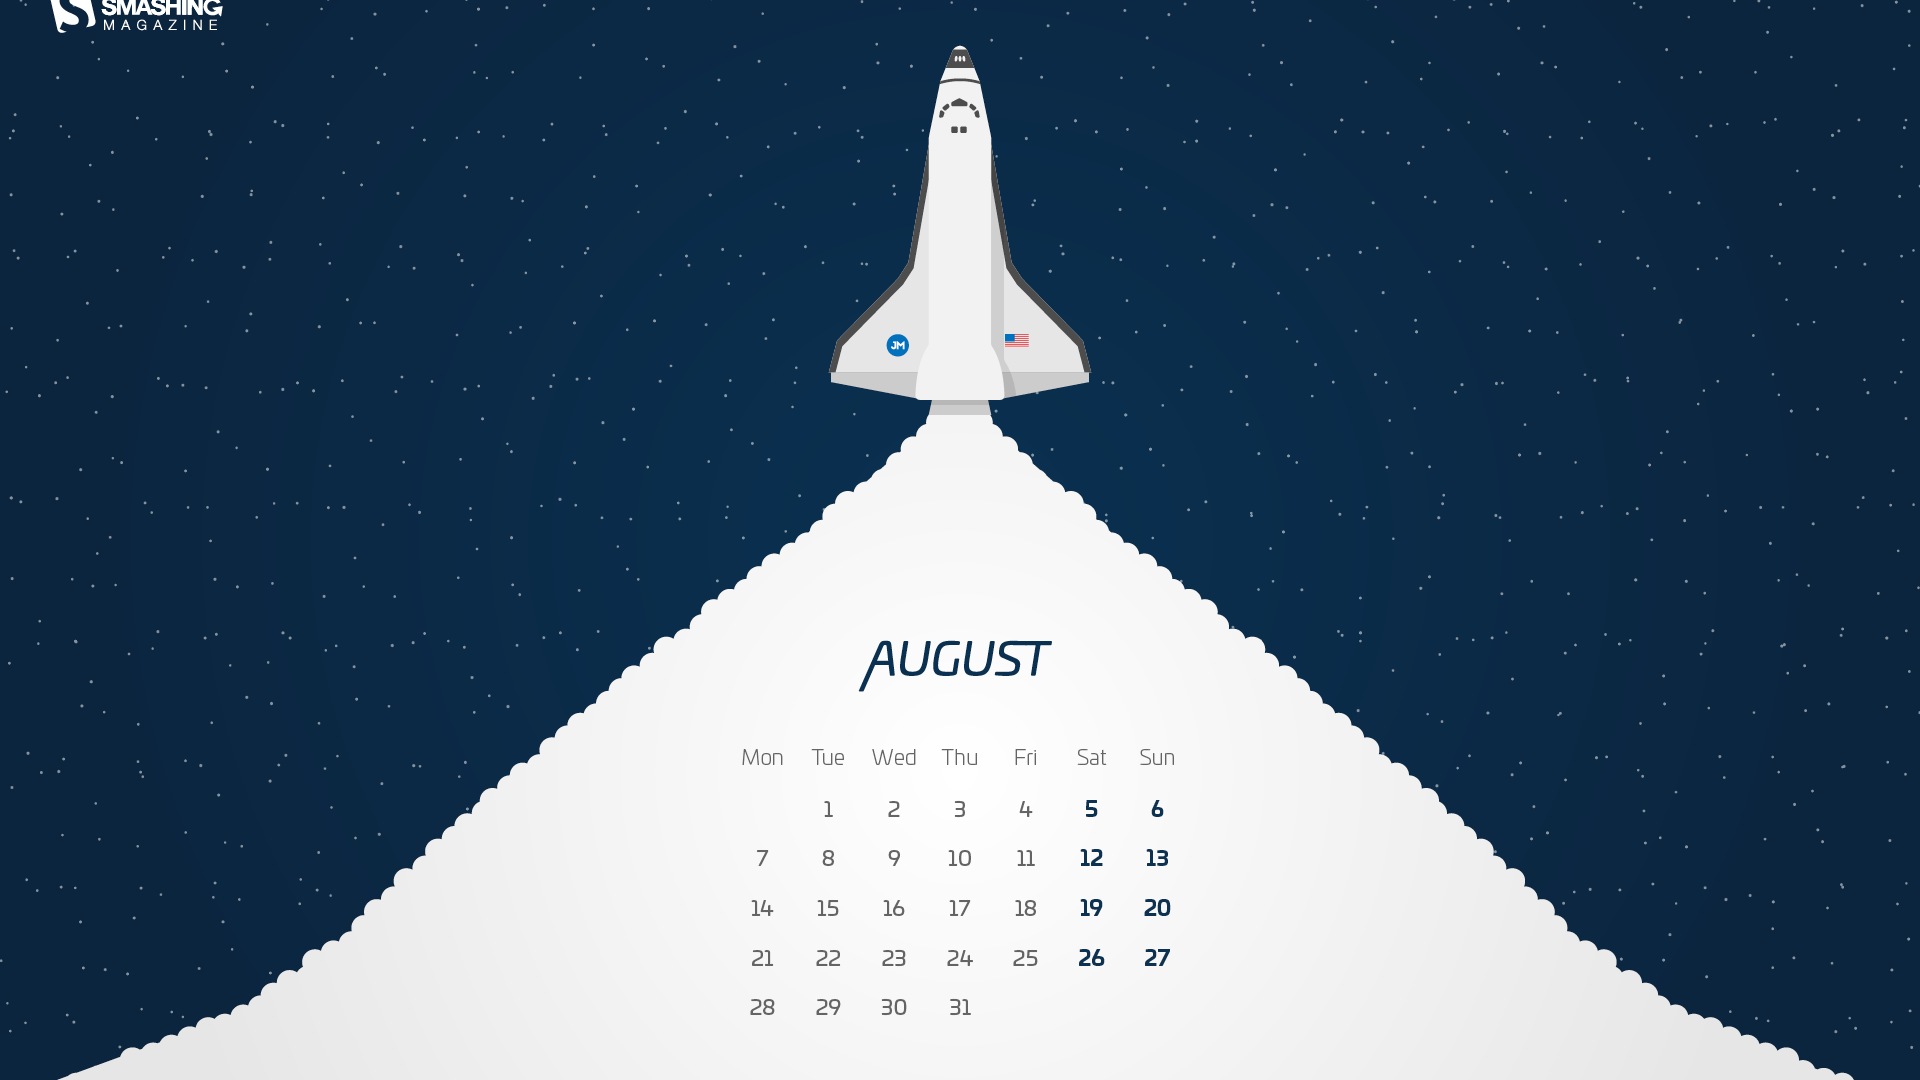 August 2017 calendar wallpaper #13 - 1920x1080